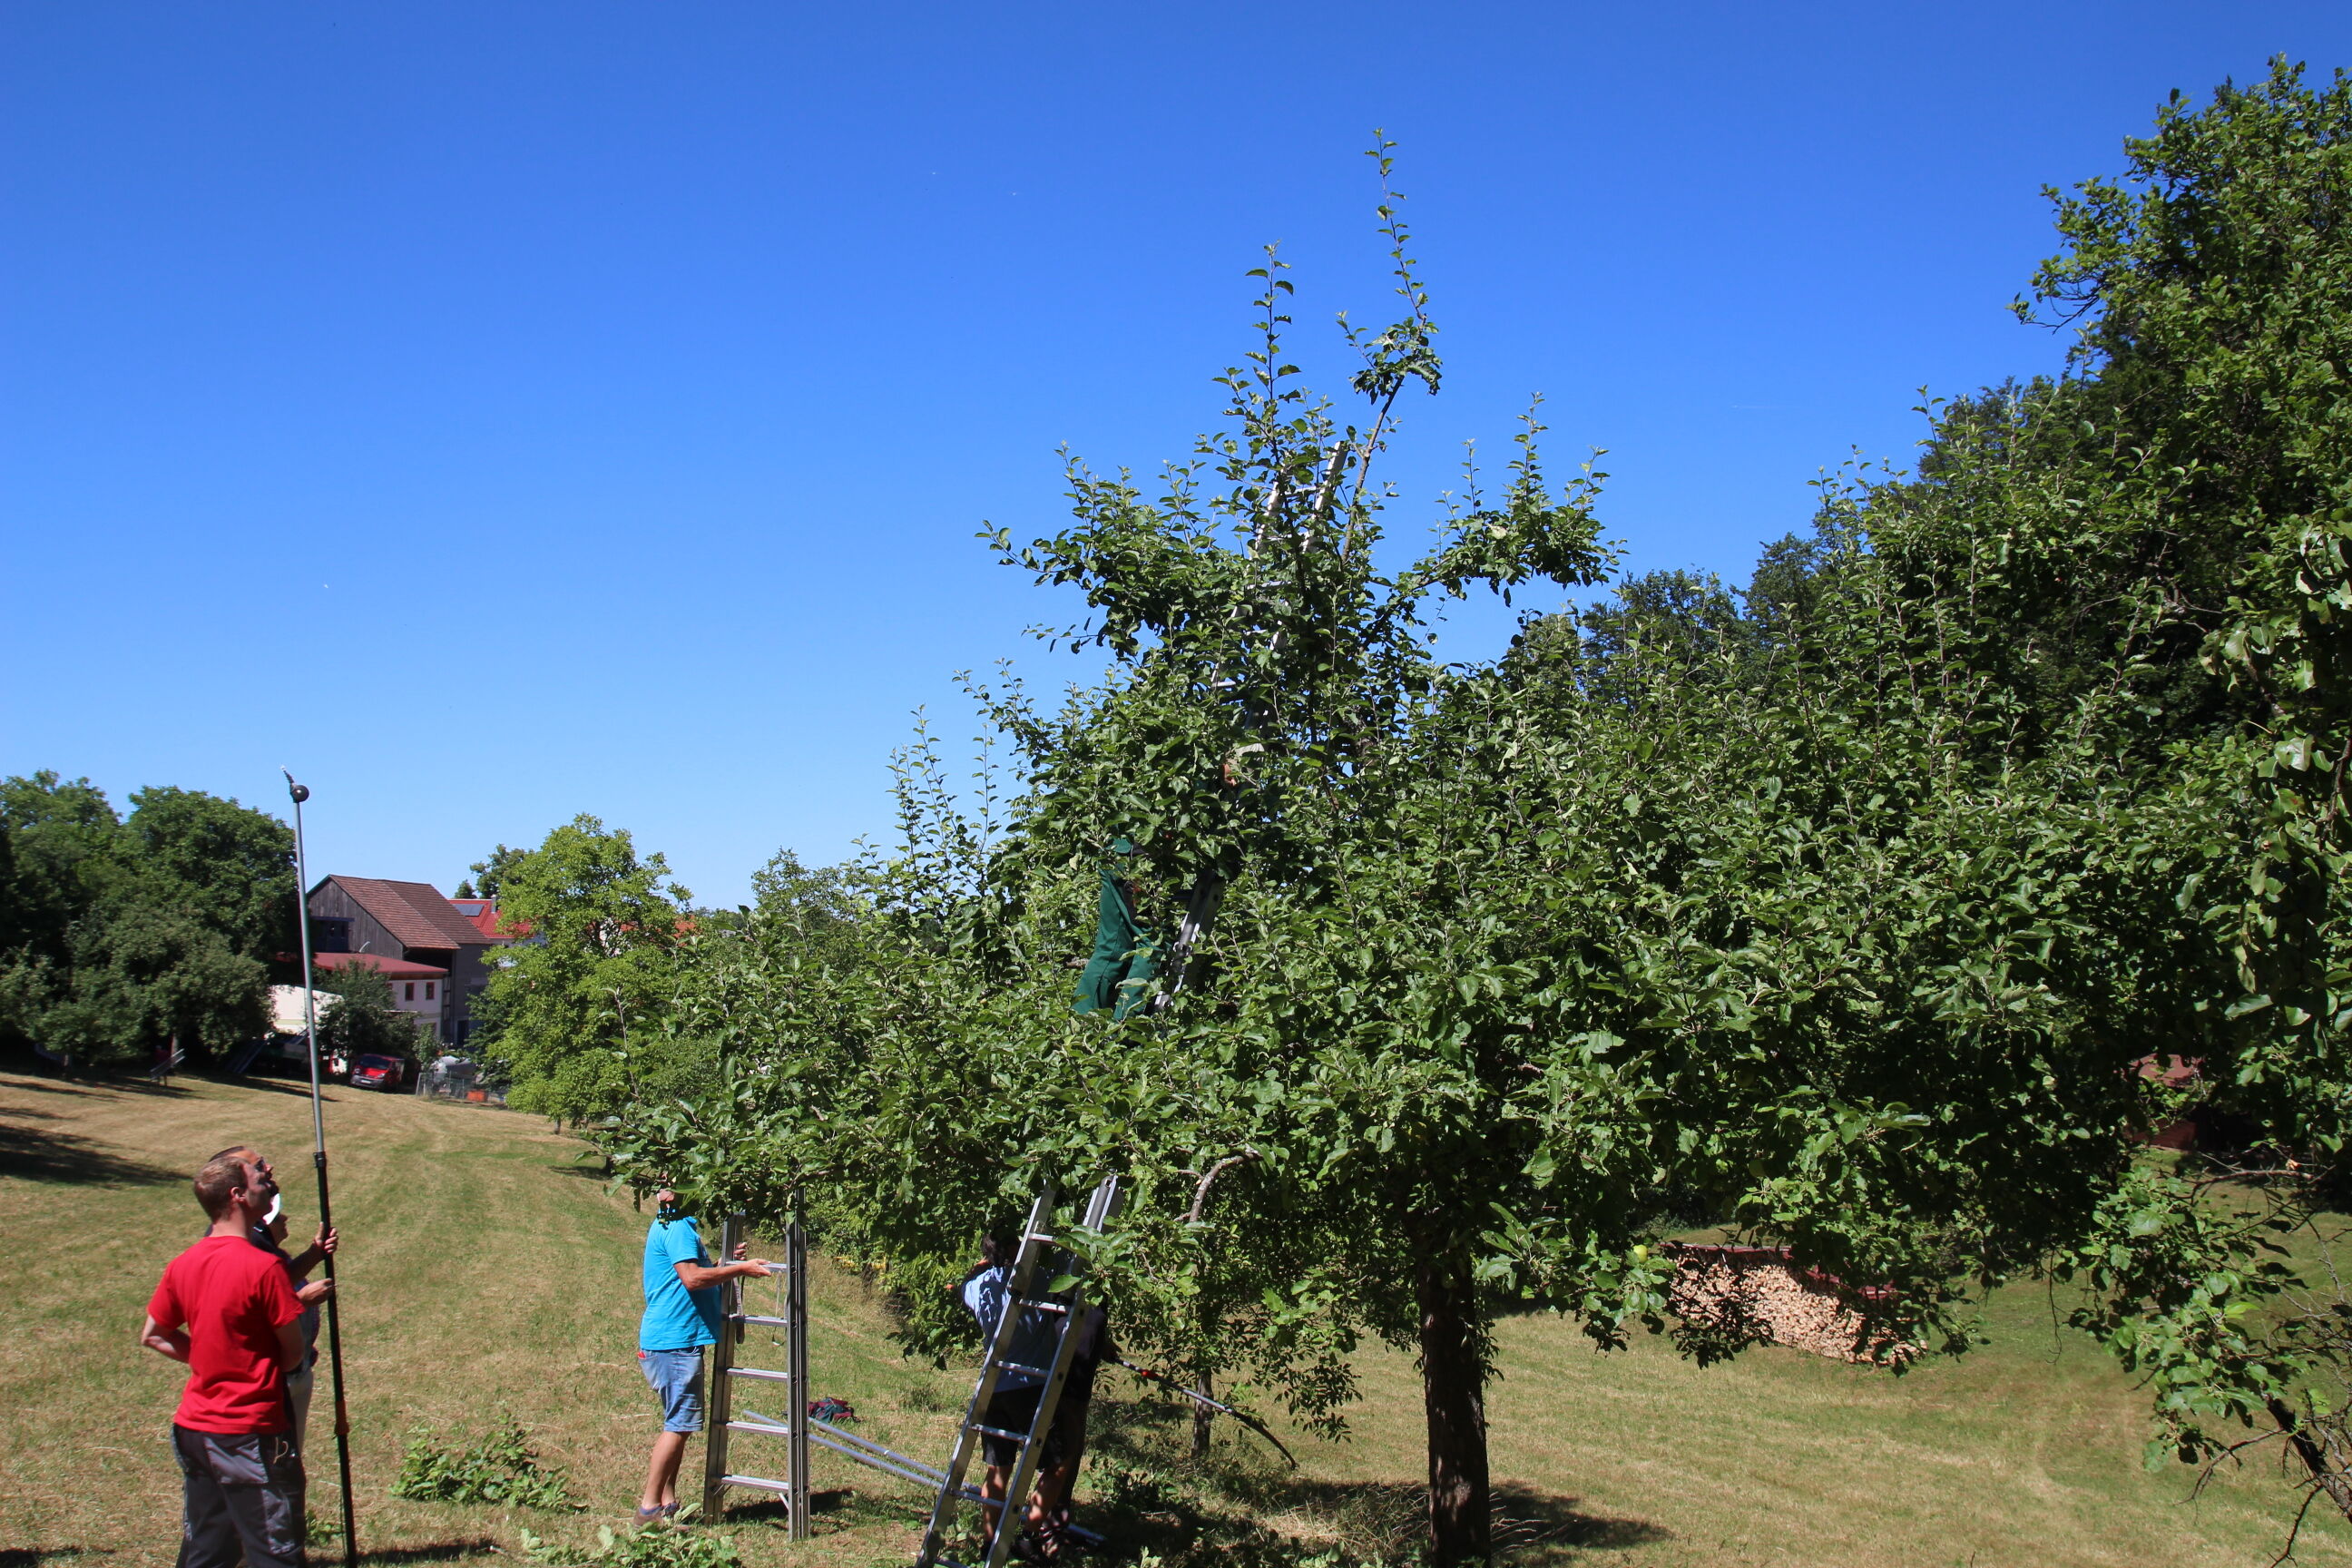 Streuobst steht hoch im Kurs, aber Obstbäume brauchen Pflege. Die Umweltstation des Landkreises bietet dazu zwei mehrteilige Kurse an.  Foto: Landrats